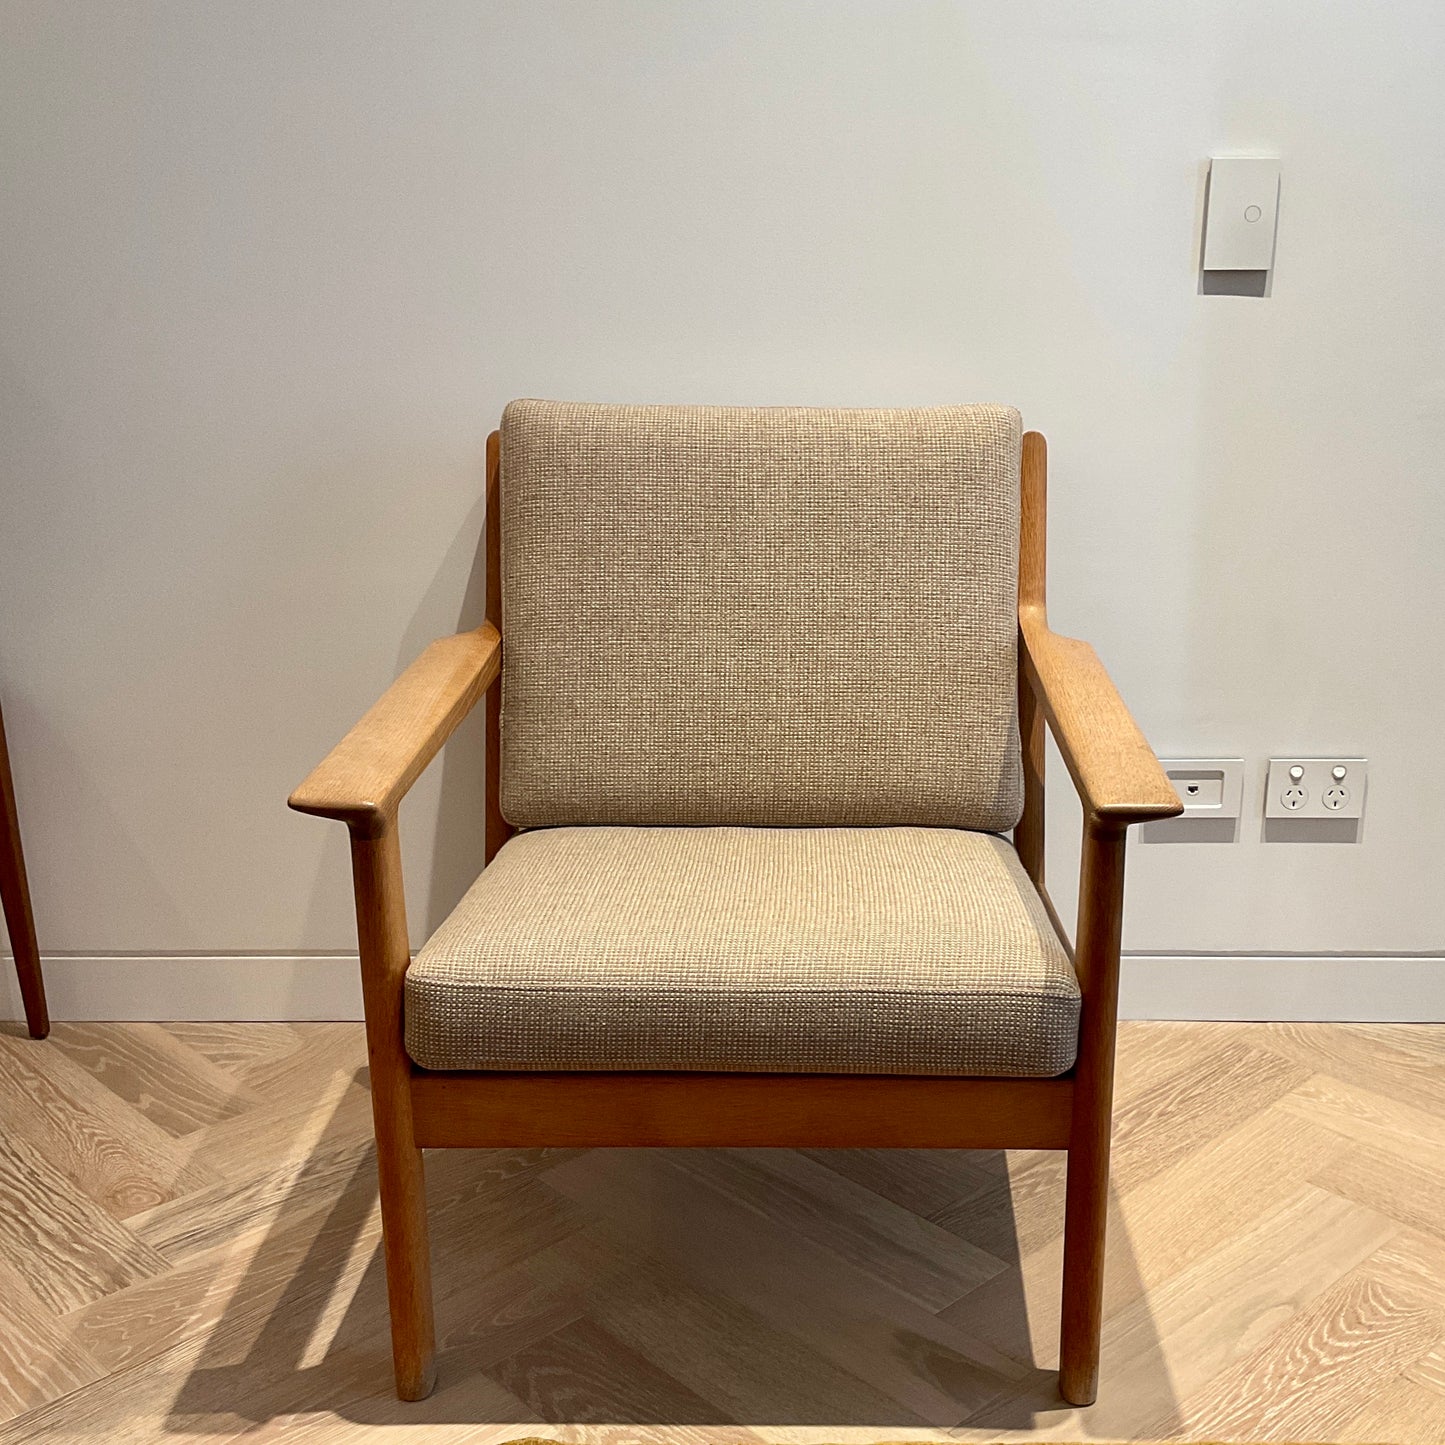 Vintage GE-265 Easy Chair by Hans J. Wegner for Getama